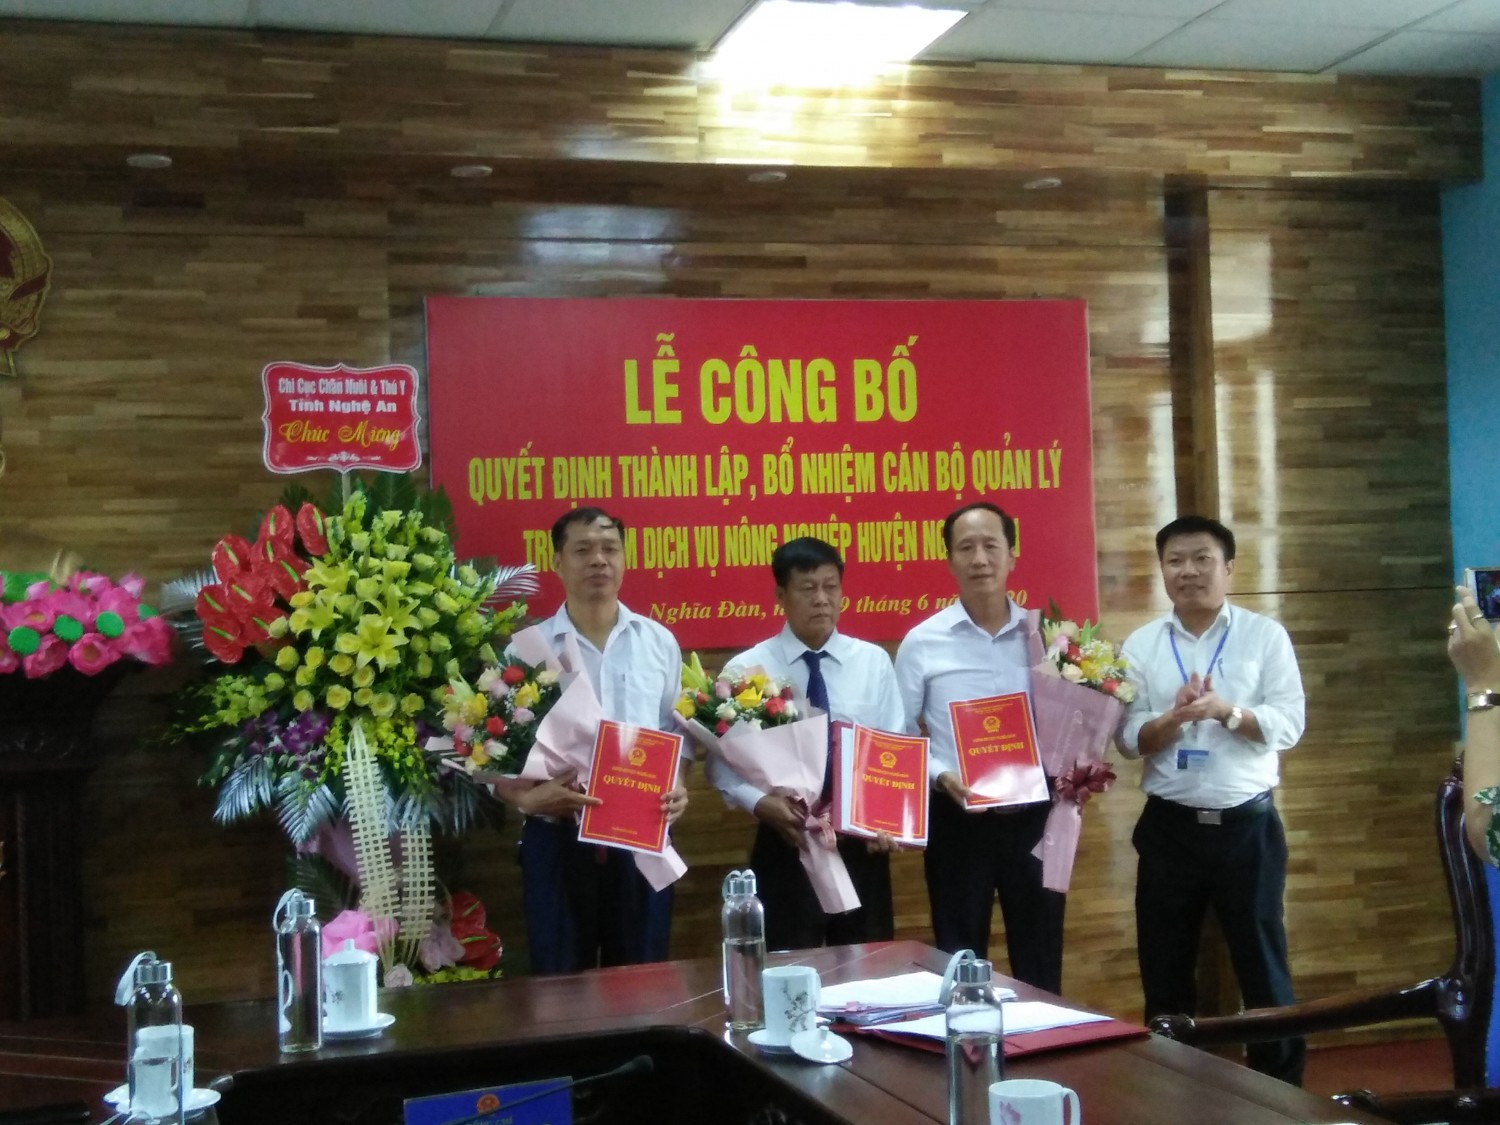 UBND huyện Nghĩa Đàn:  Công bố thành lập Trung tâm Dịch vụ nông nghiệp huyện Nghĩa Đàn.